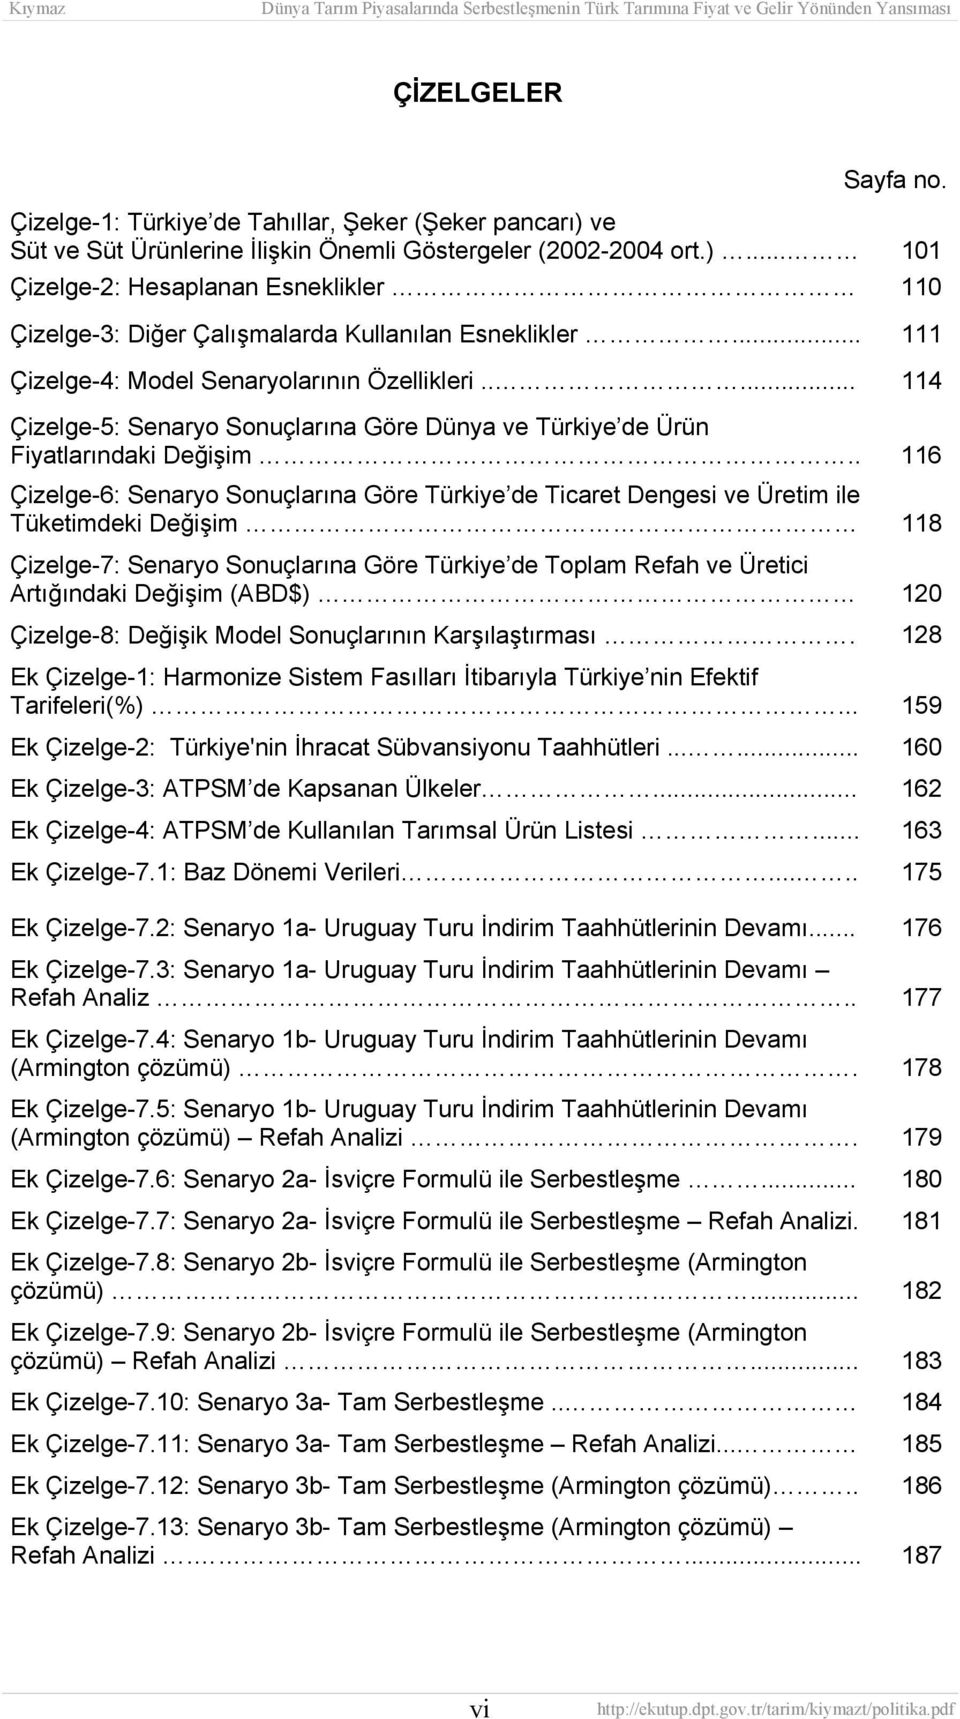 . 116 Çizelge-6: Senaryo Sonuçlarına Göre Türkiye de Ticaret Dengesi ve Üretim ile Tüketimdeki Değişim 118 Çizelge-7: Senaryo Sonuçlarına Göre Türkiye de Toplam Refah ve Üretici Artığındaki Değişim